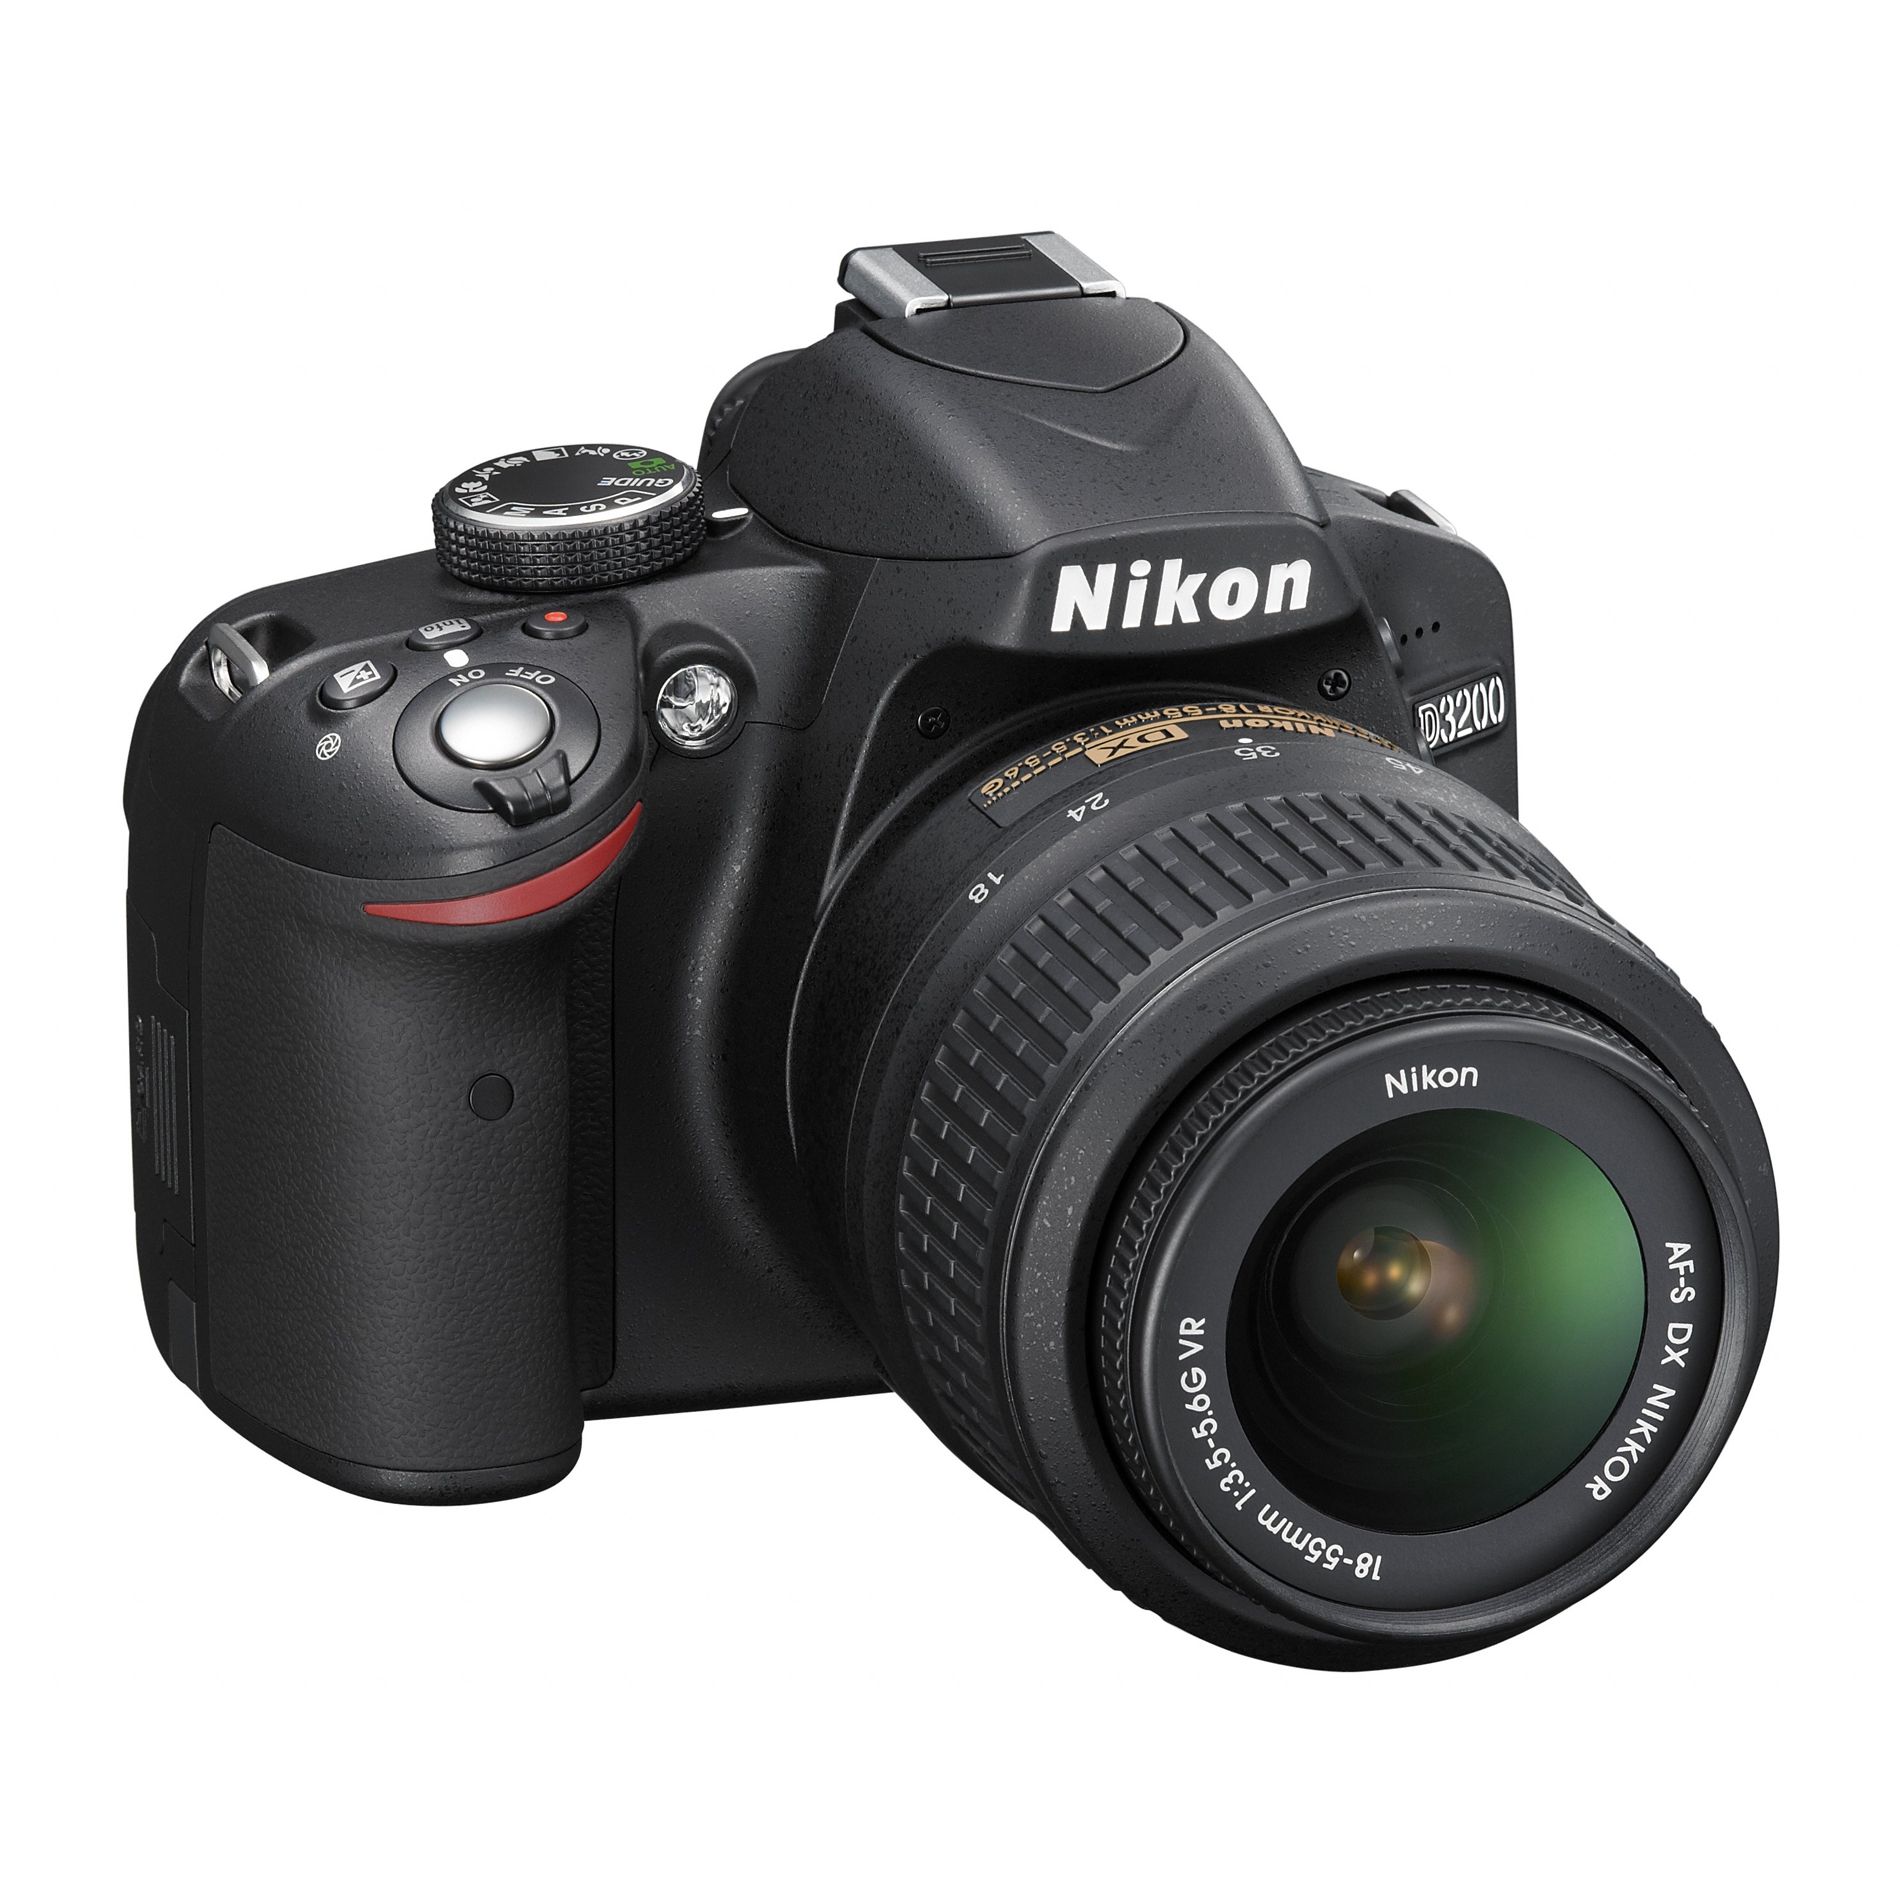 Nikon D3200 DSLR Kit - Black 3 in. or more